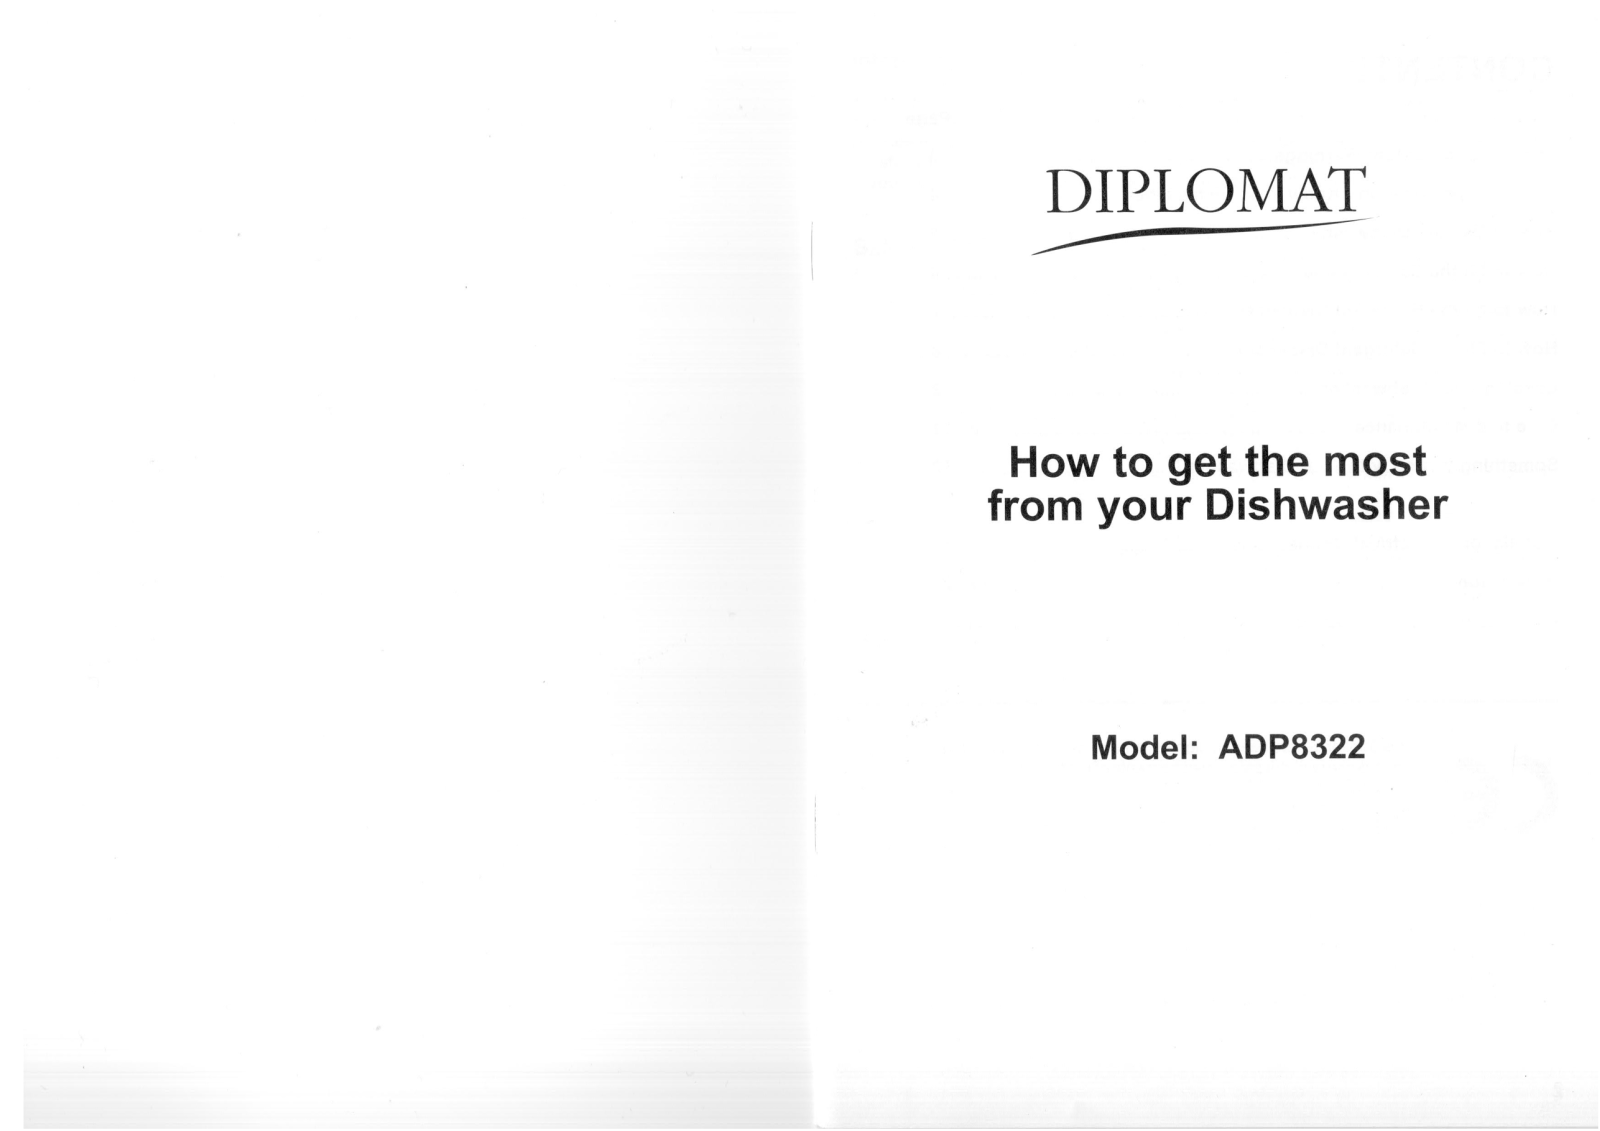 Diplomat ADP8322 Manual